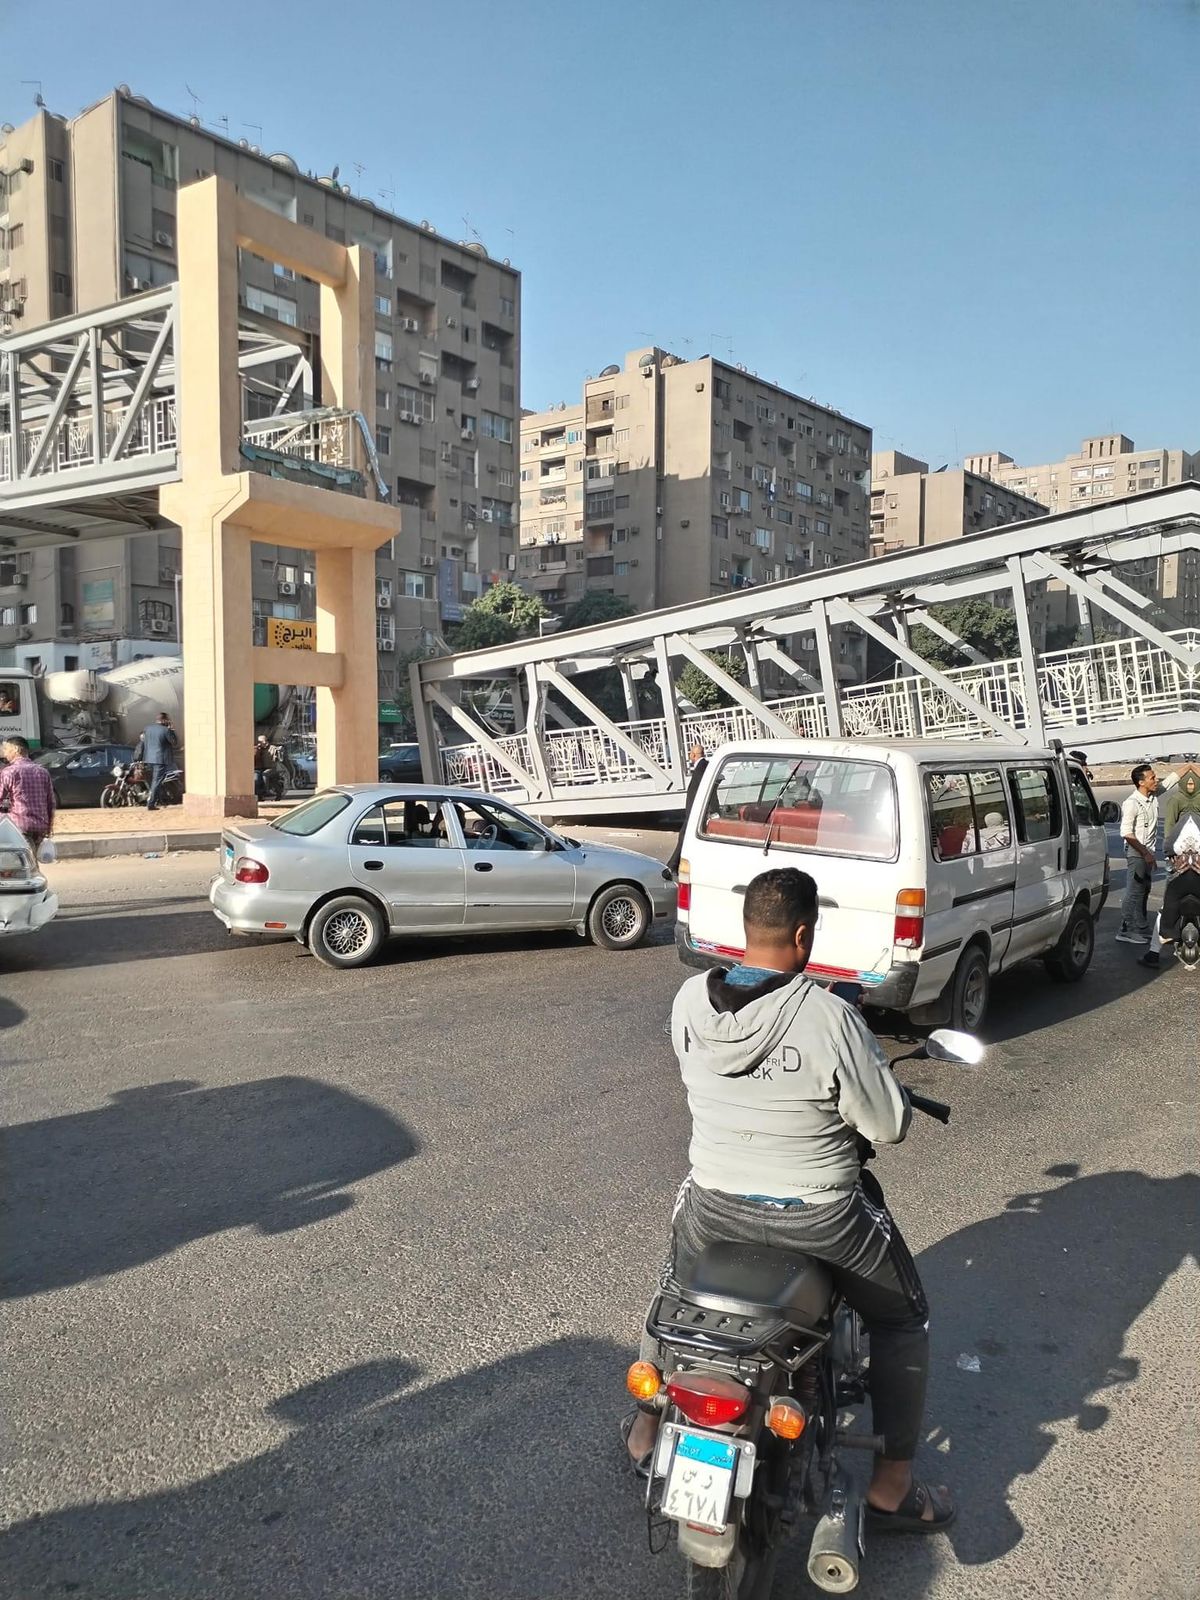 سقوط كوبري مشاة في شارع أحمد عرابي بالمهندسين الذين اصطدمت بسيارتهم نقل